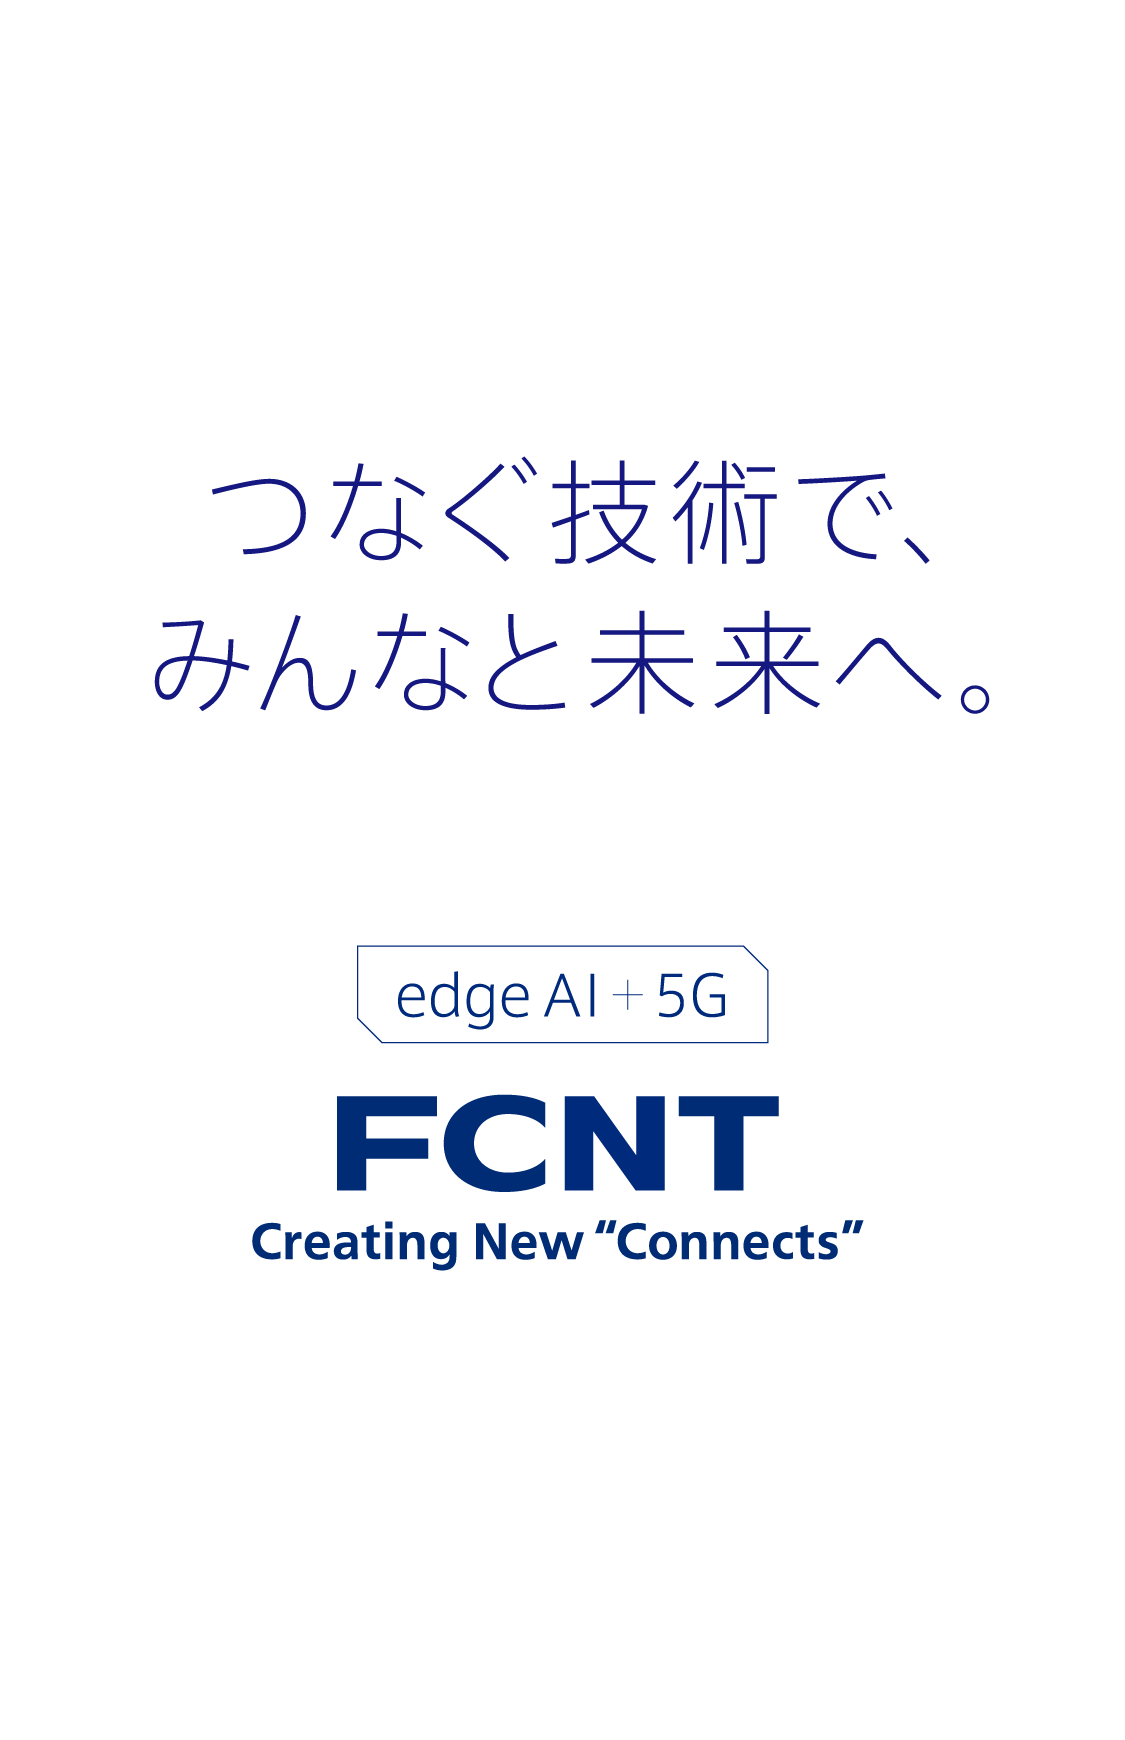 つなぐ技術で、みんなと未来へ。edge AI + 5G FCNT Creating New "Connects"